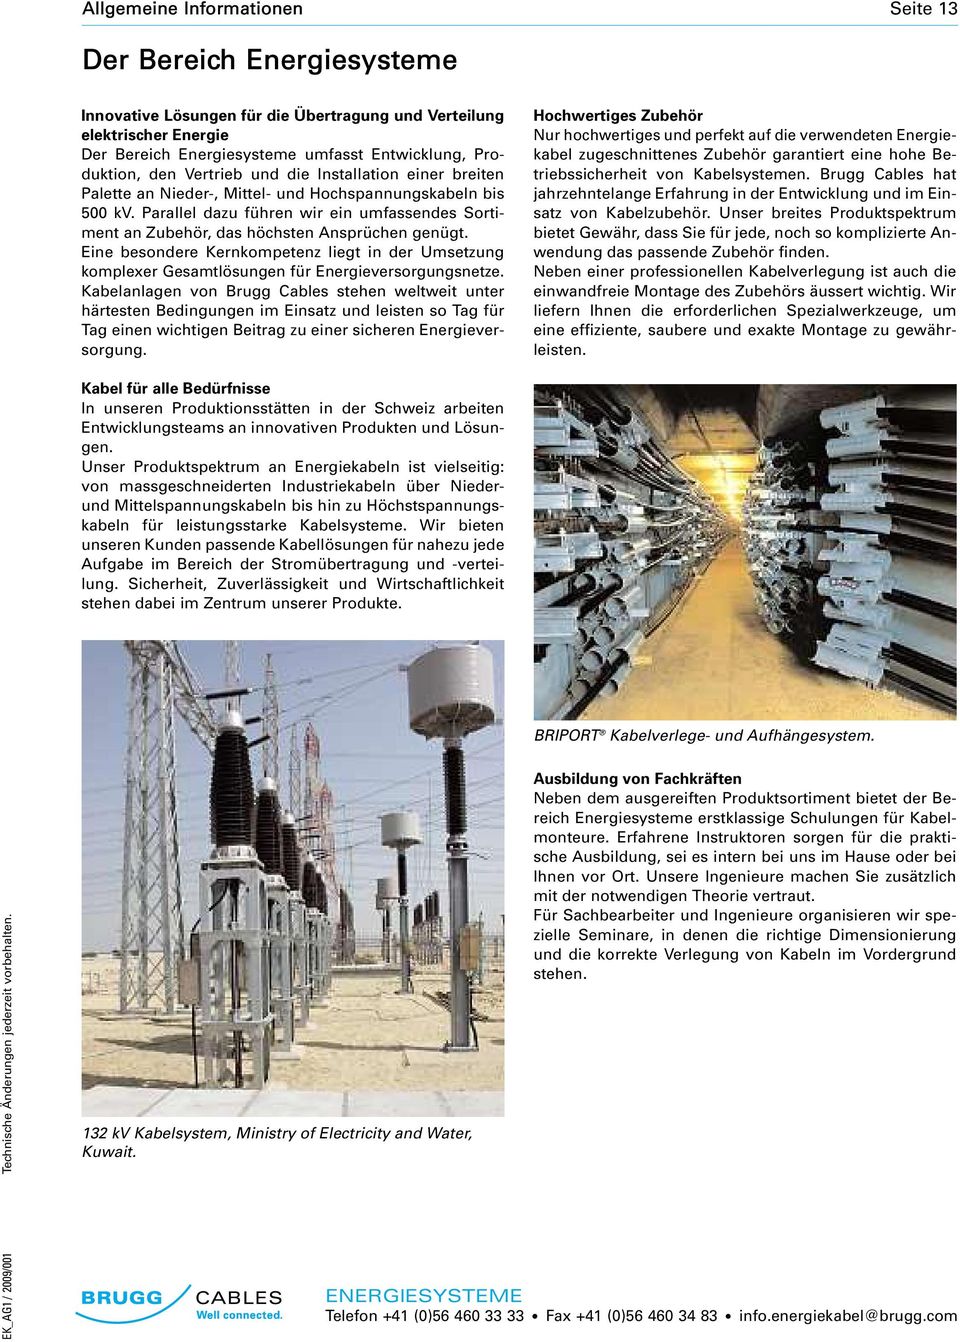 Eine besondere Kernkompetenz liegt in der Umsetzung komplexer Gesmtlösungen für Energieversorgungsnetze.